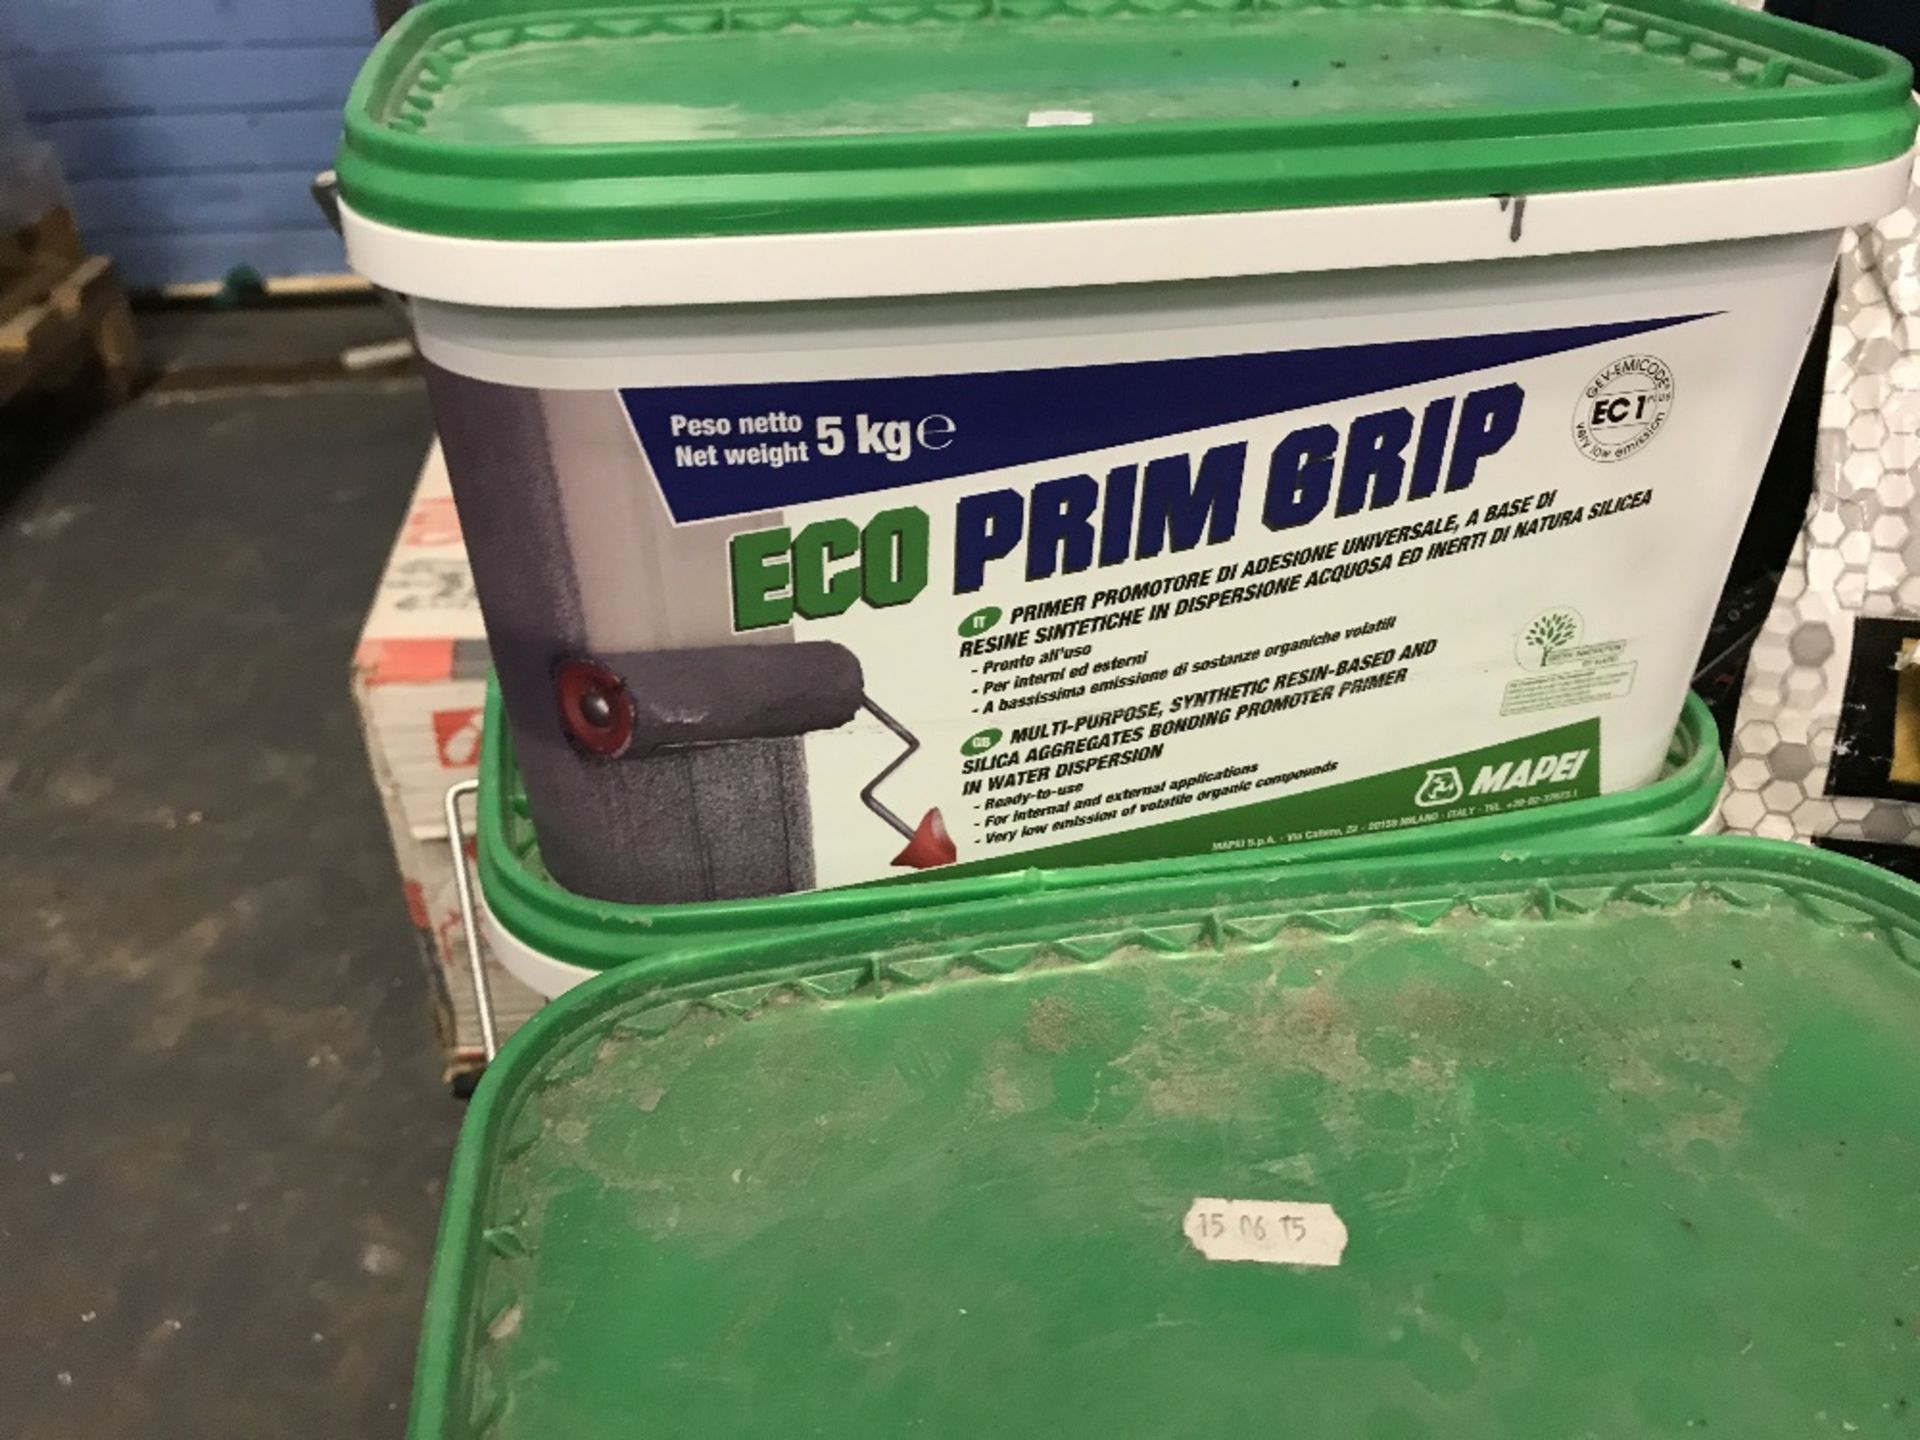 5 x new tubs of Prim Grip